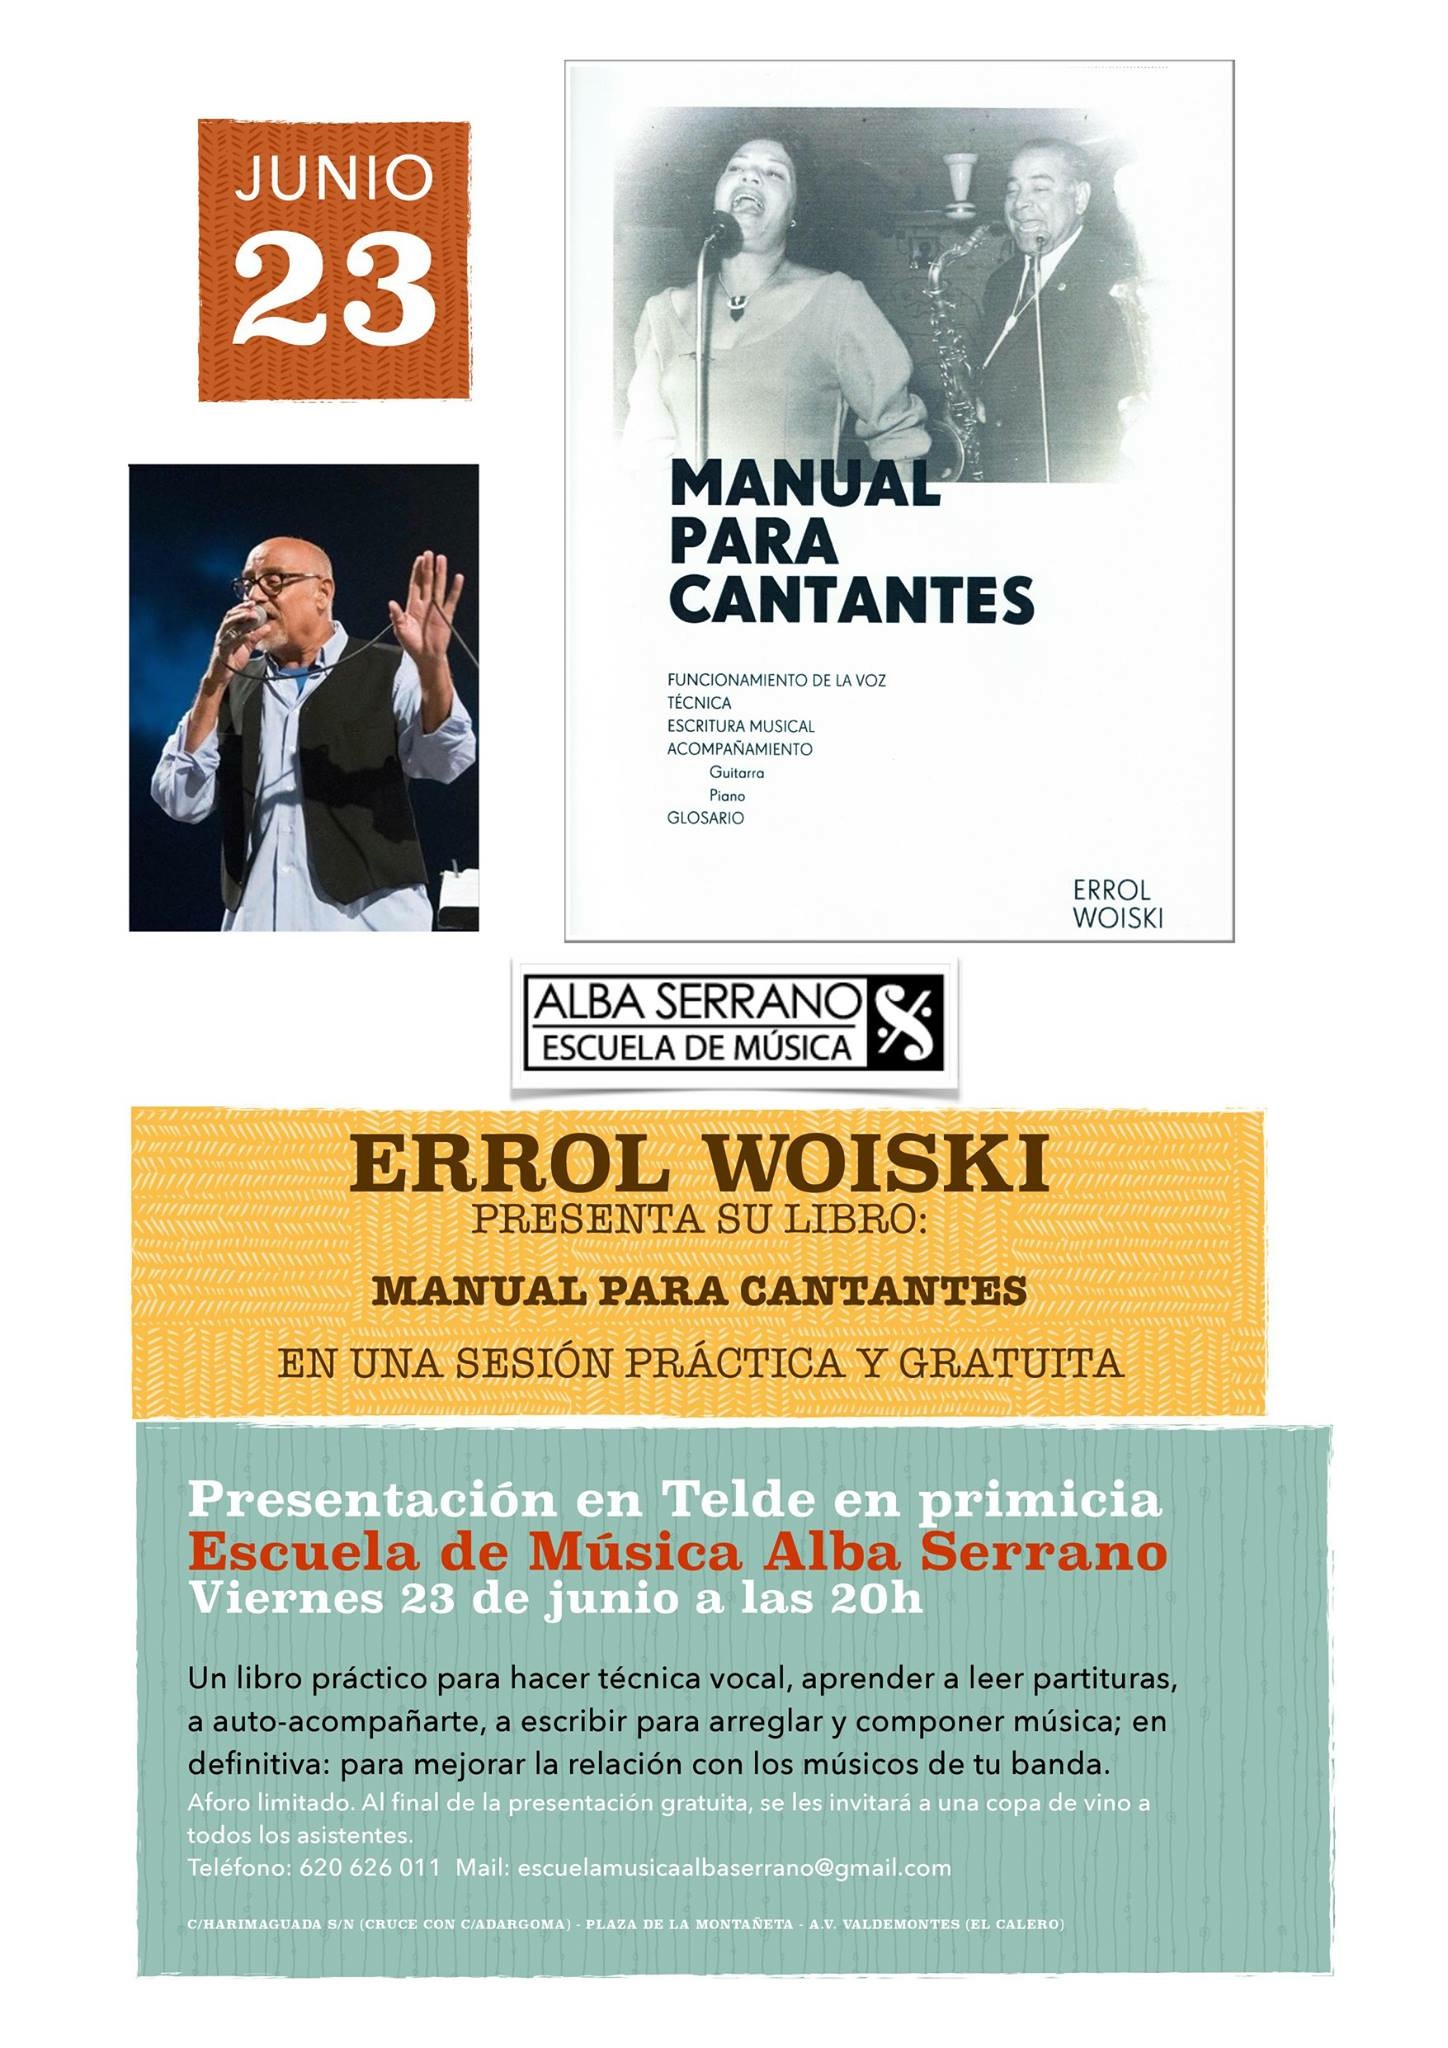 Presentación práctica y gratuita del ‘Manual para Cantantes’ de Errol Woiski en la Escuela de Música Alba Serrano